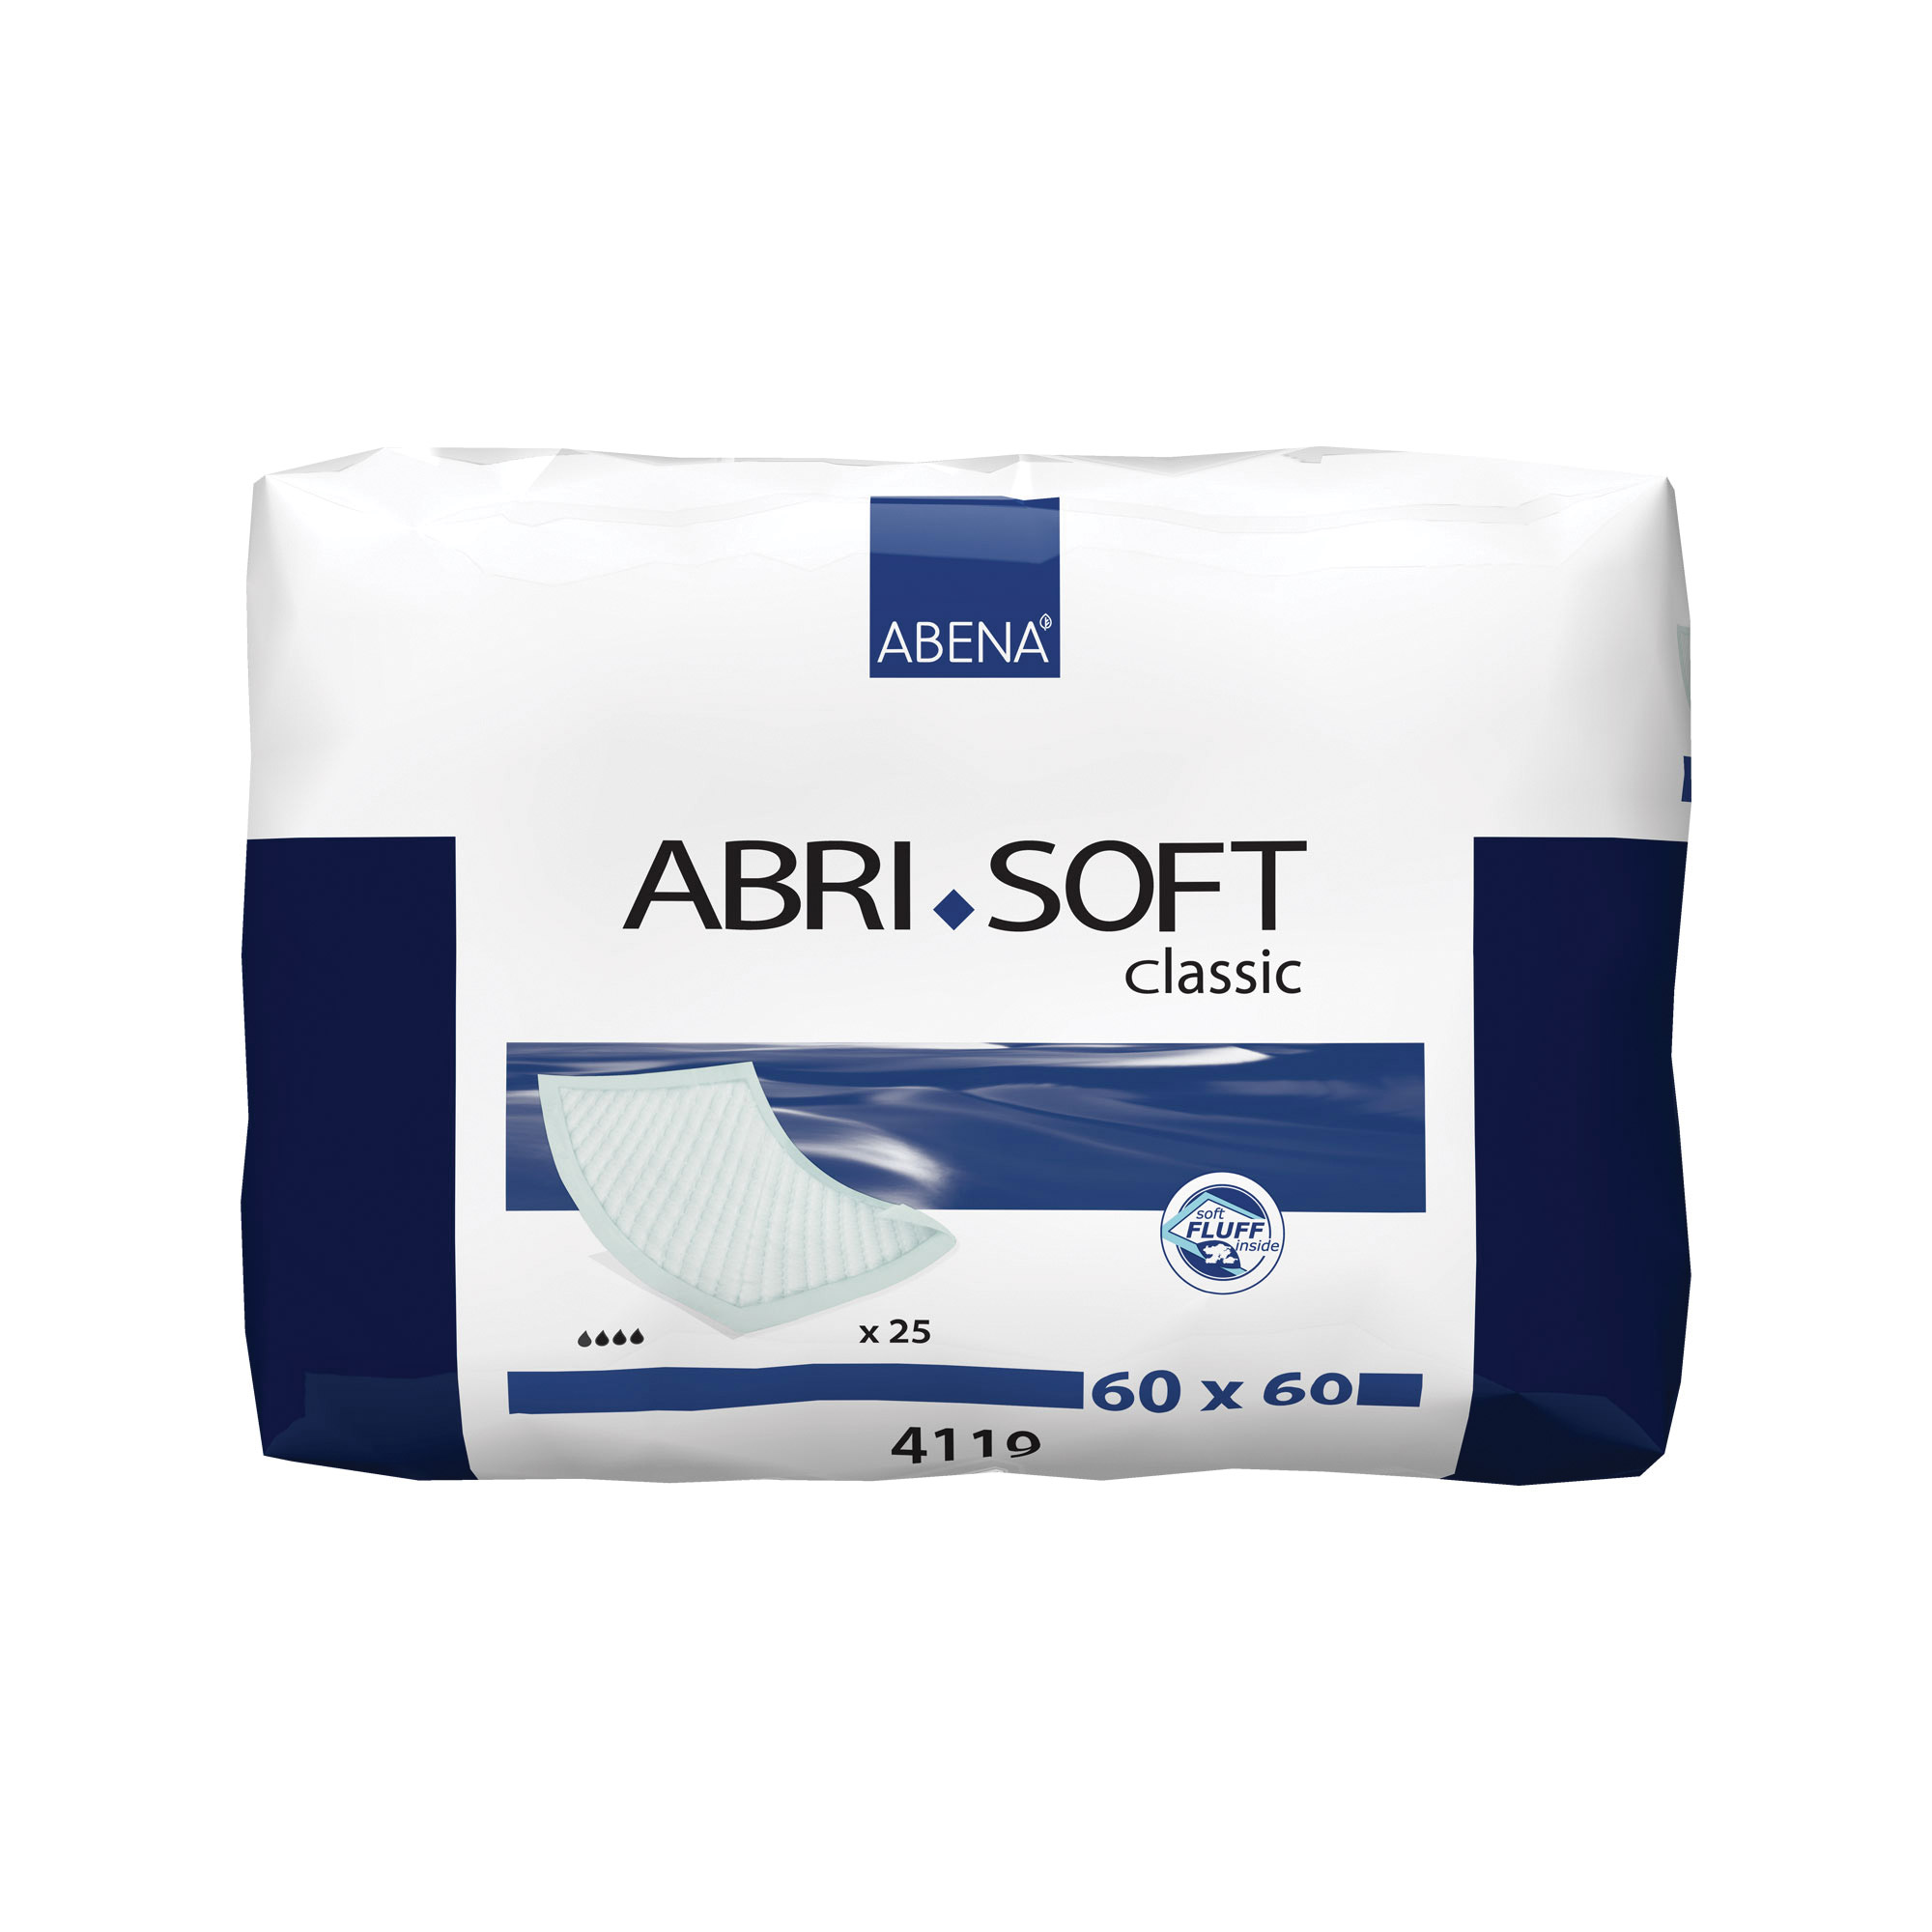 Abri-Soft Classic 60X60Cm - 25 Pack